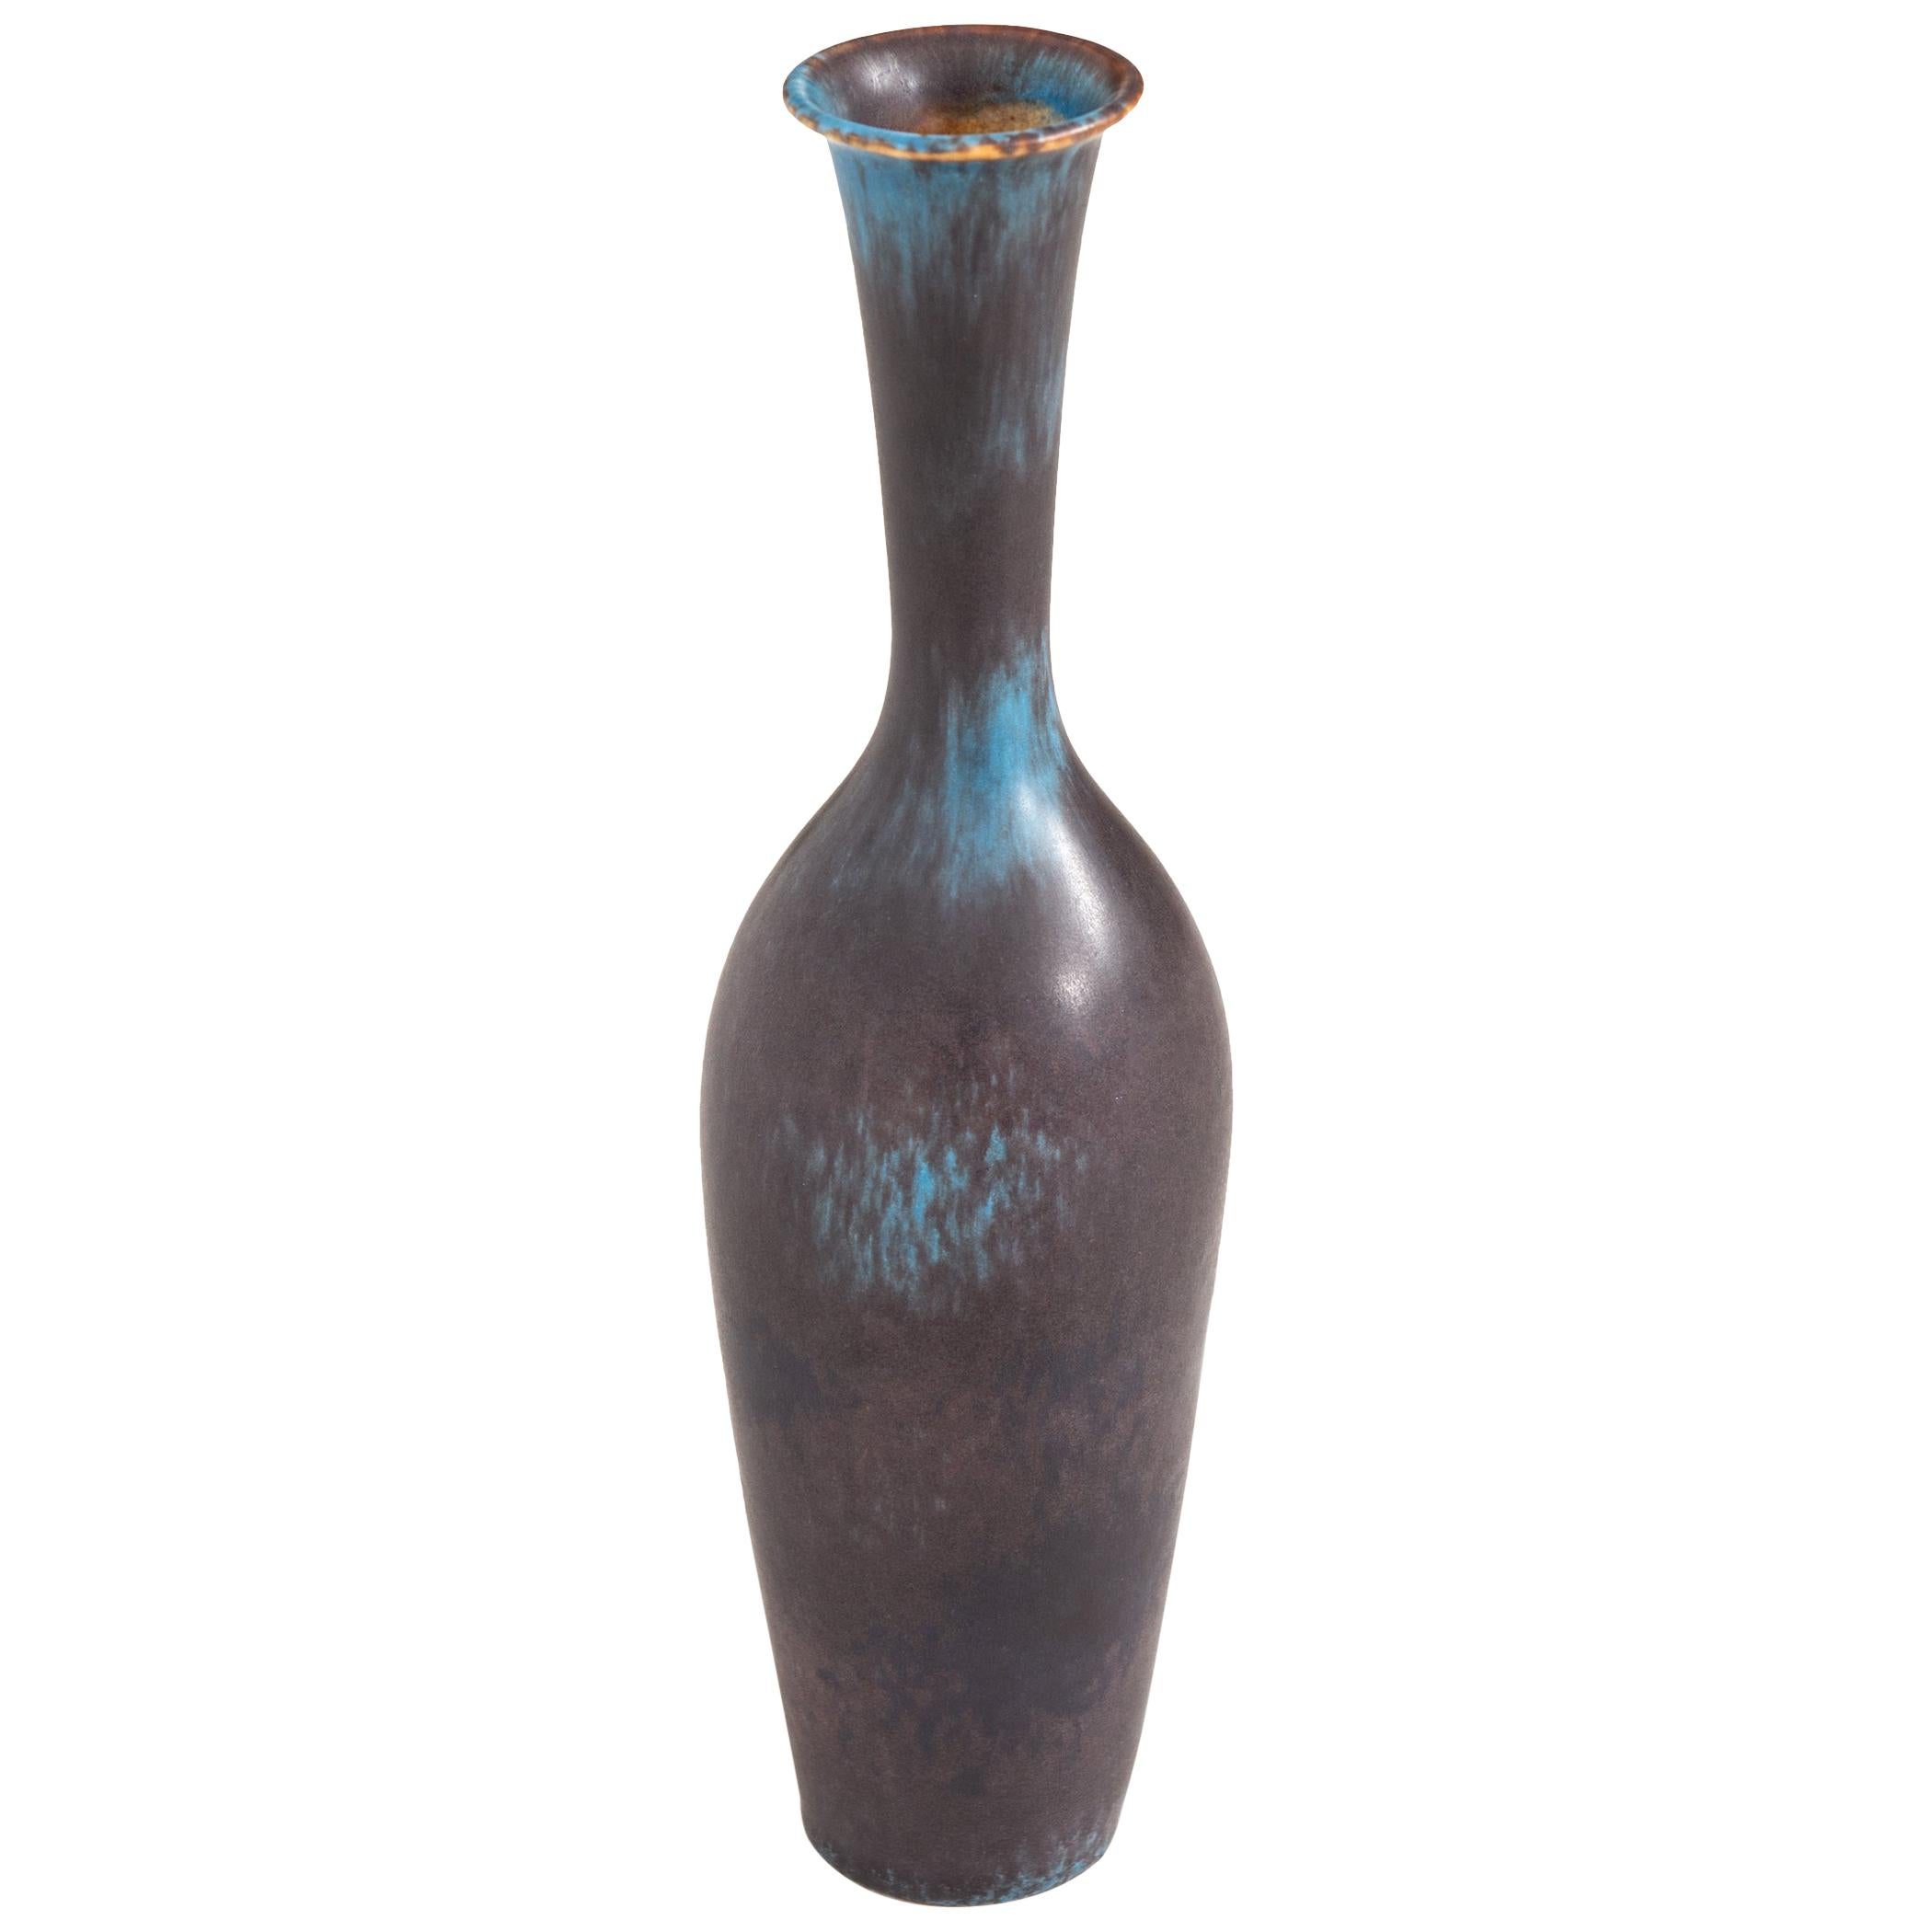 Vase de Gunnar Nylund produit par Rrstrand en Suède